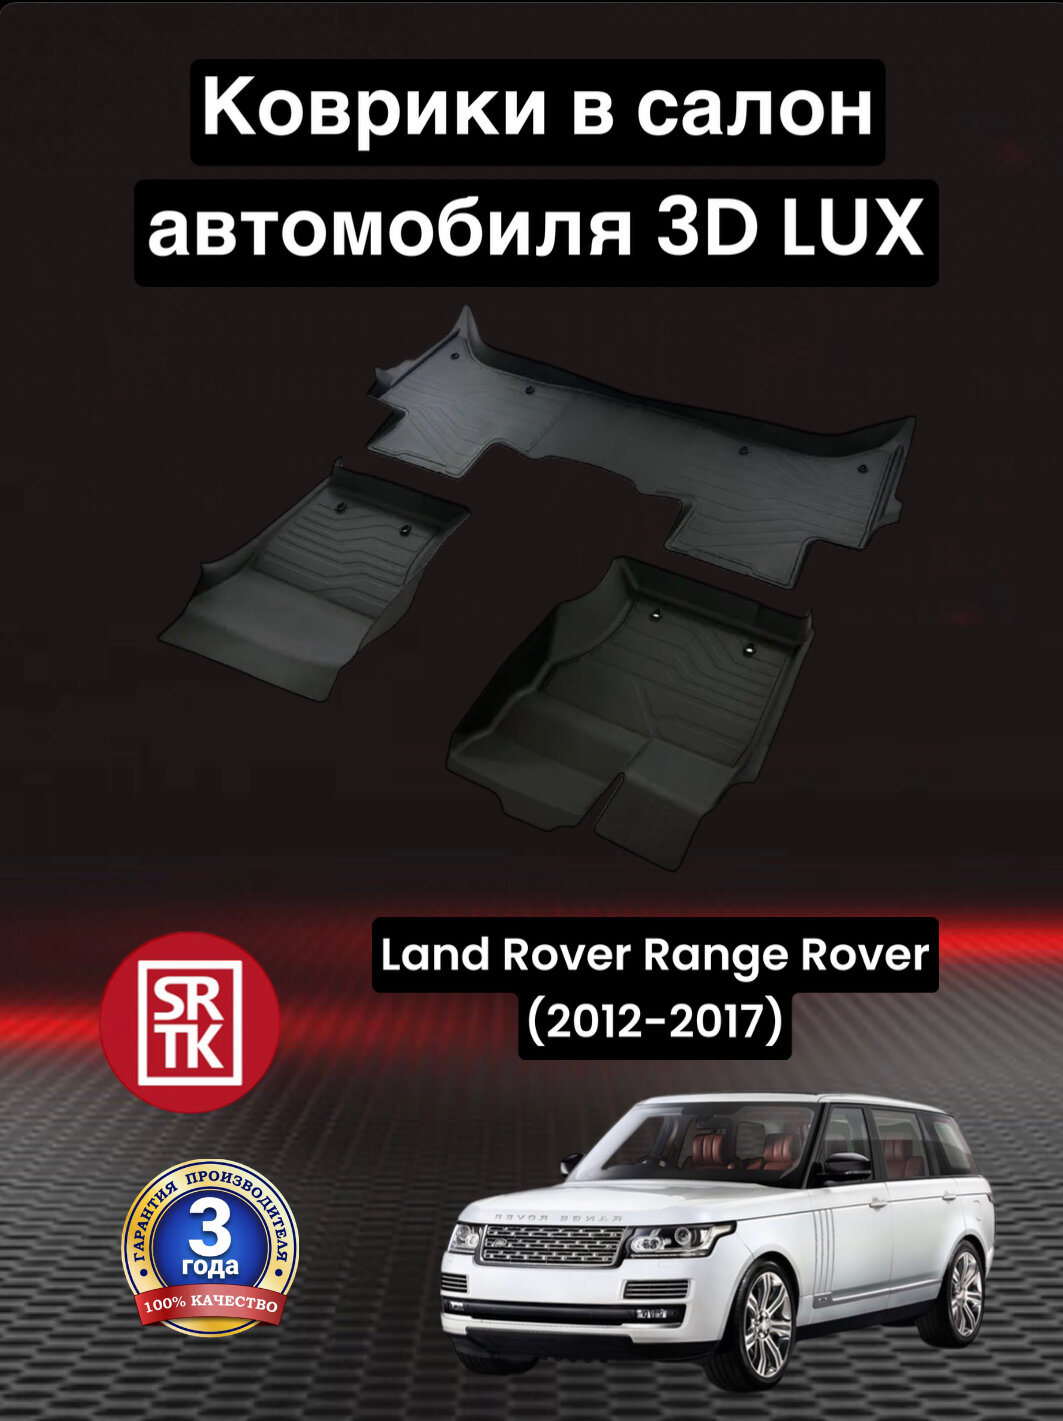 Коврики резиновые Ленд Ровер Рендж Ровер (2012-2017)/ Land Rover Range Rover (2012-2017)/ 3D LUX SRTK (Саранск) комплект в салон